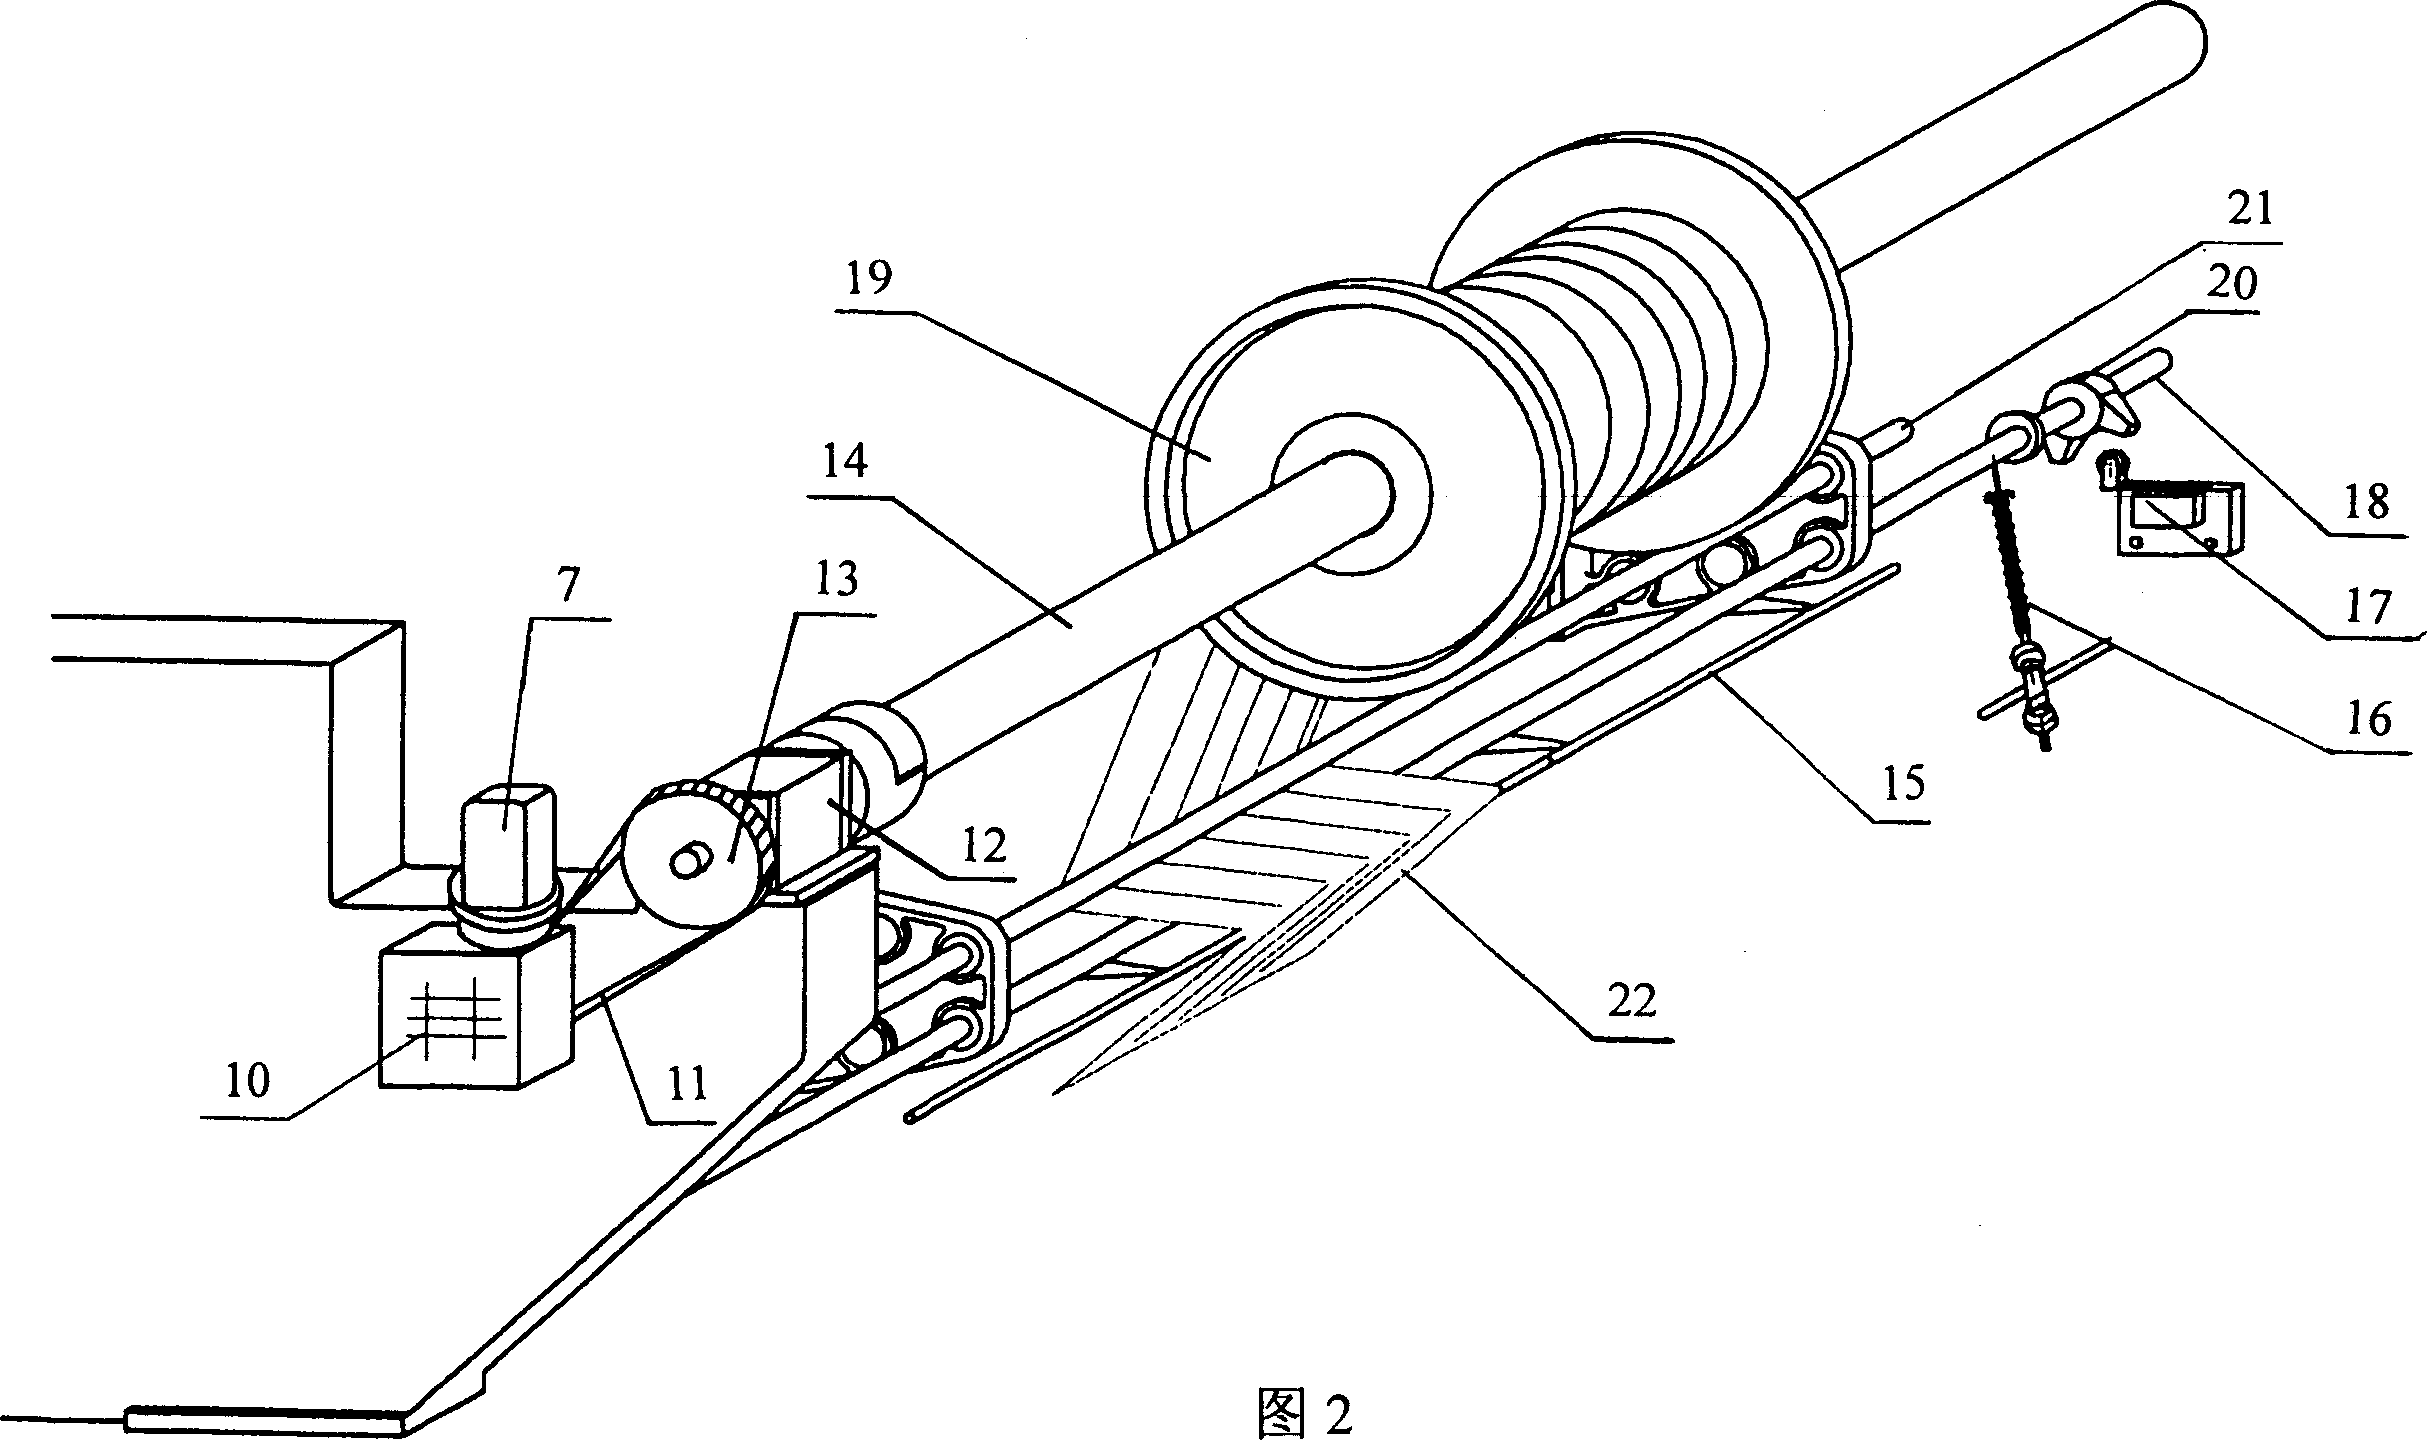 Electronic warp feeding system of warp knitting machine